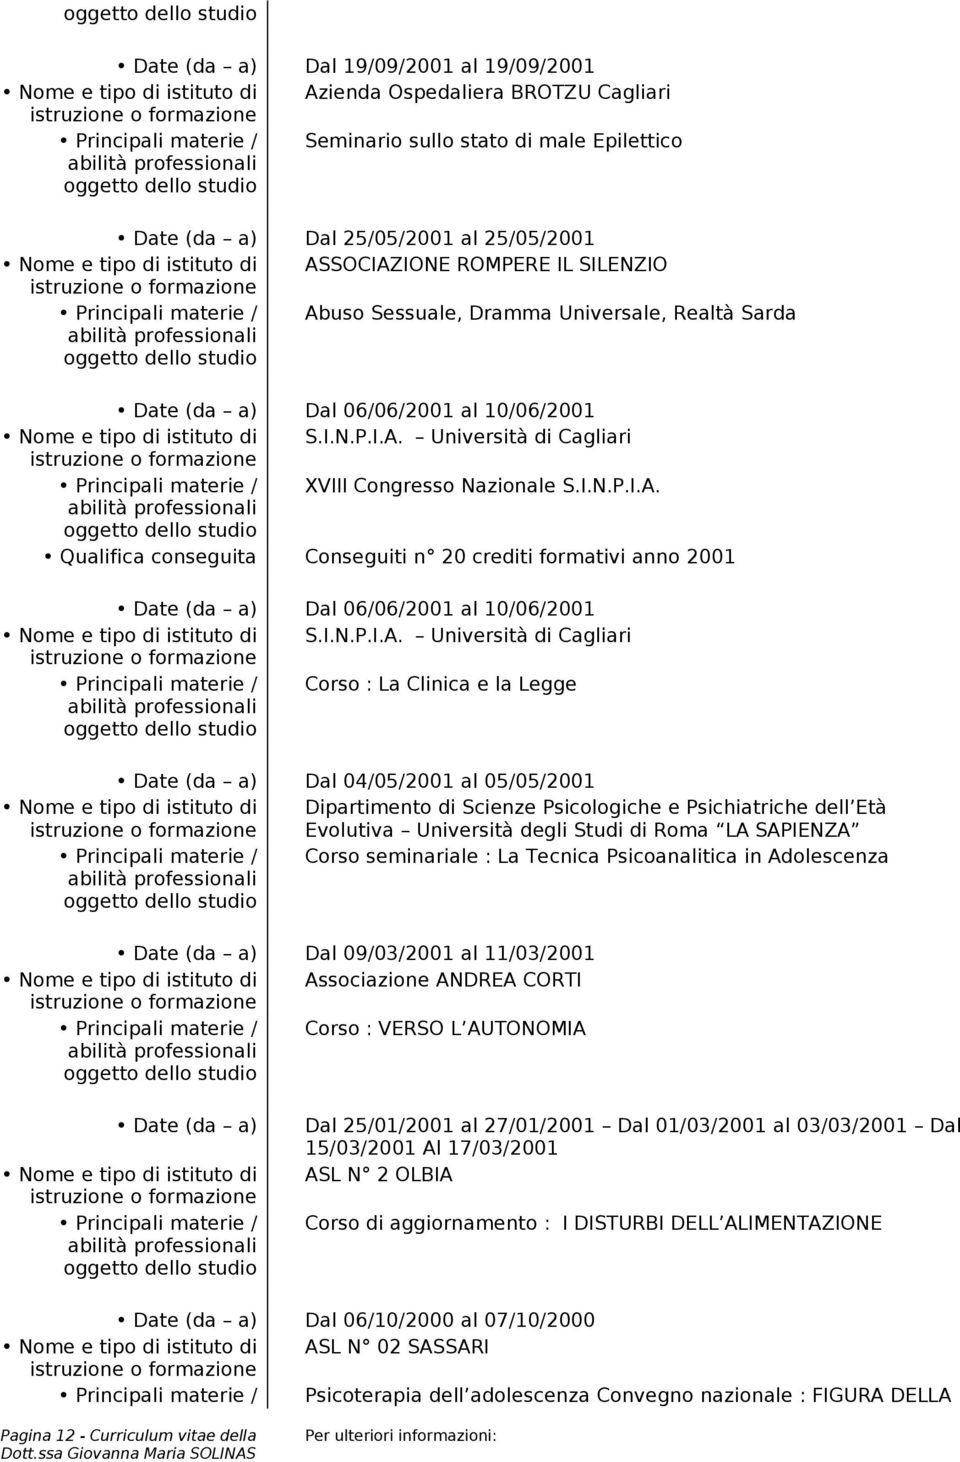 istituto di S.I.N.P.I.A. Università di Cagliari Principali materie / XVIII Congresso Nazionale S.I.N.P.I.A. Qualifica conseguita Conseguiti n 20 crediti formativi anno 2001 Date (da a) Dal 06/06/2001 al 10/06/2001 Nome e tipo di istituto di S.